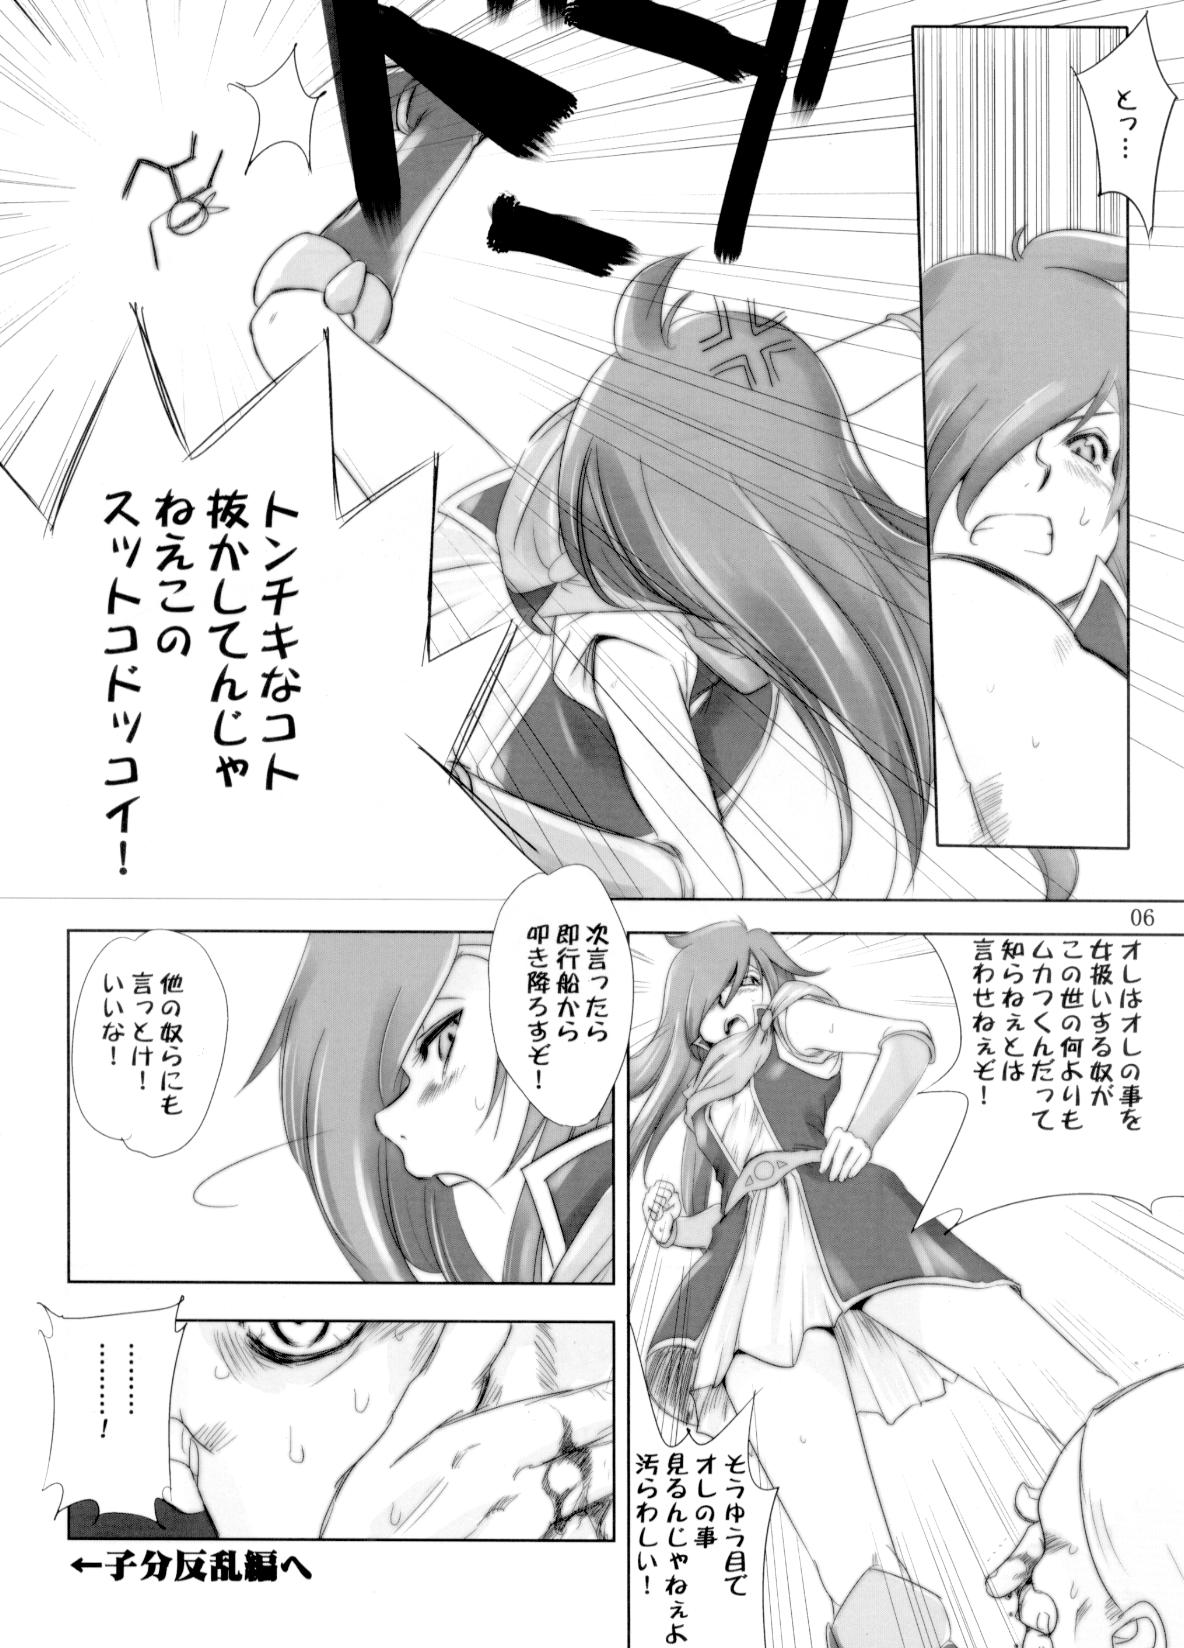 [Ikebukuro DPC] White Impure Desire vol.11 (Final Fantasy) page 5 full